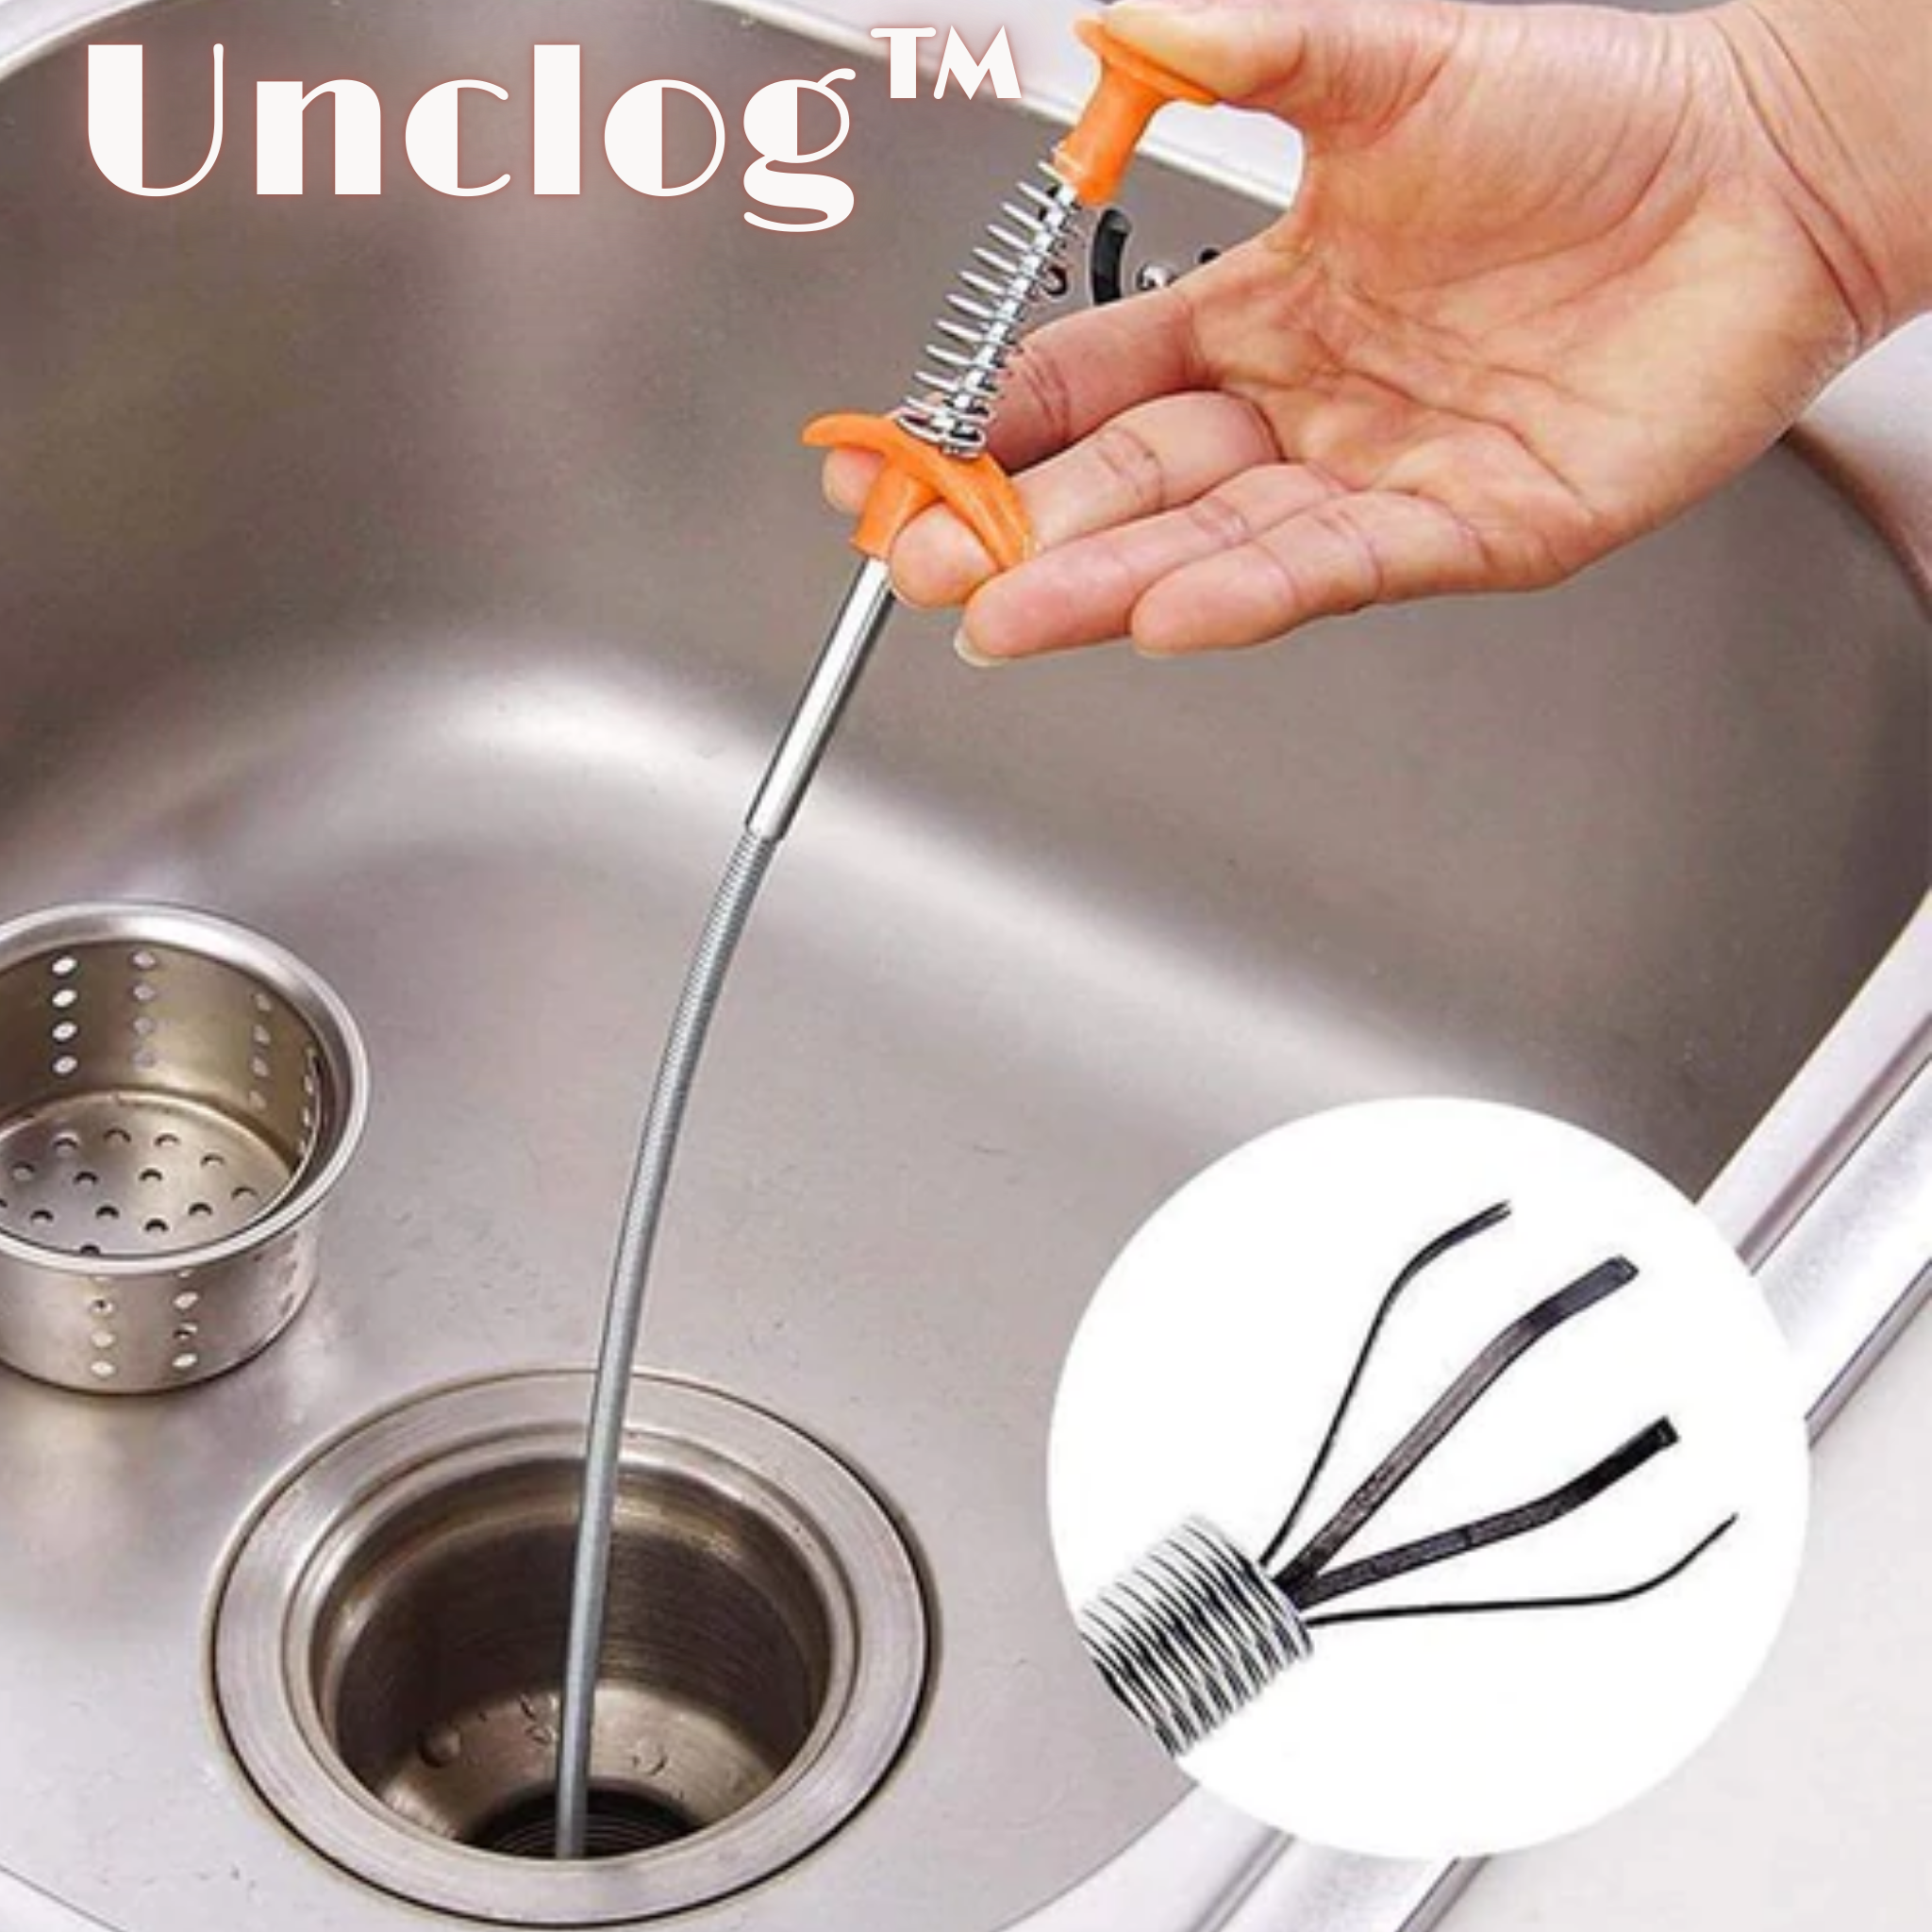 Unclog™ | Outil de ramassage pour le nettoyage des égouts (1+1 Gratuit !)